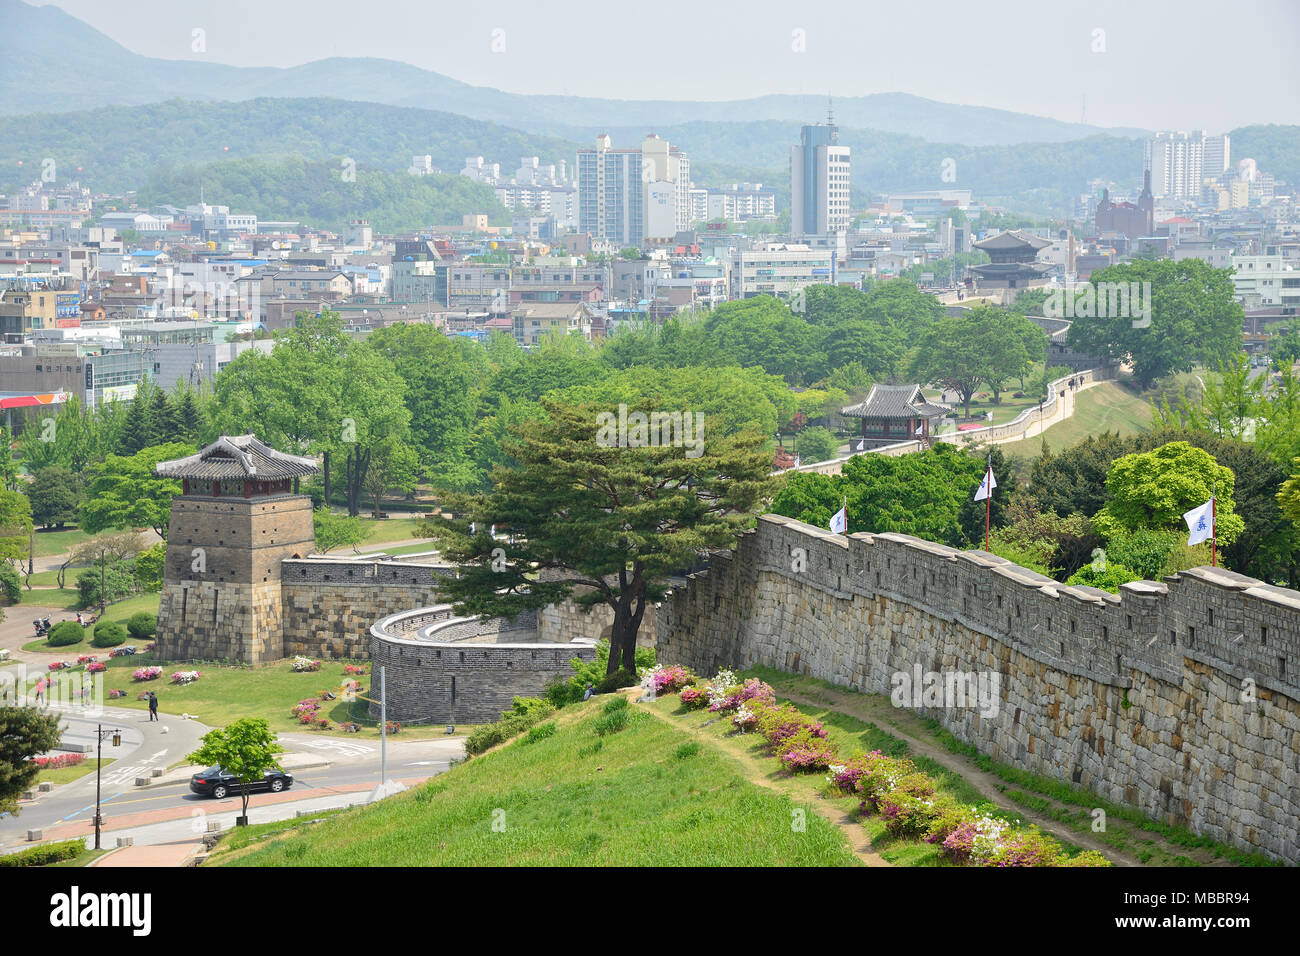 SUWON, CORÉE - 02 MAI 2014 : le mur est Hwaseong entourant le centre de Suwon, la capitale de la province de Gyeonggi-do, Corée du Sud. Banque D'Images